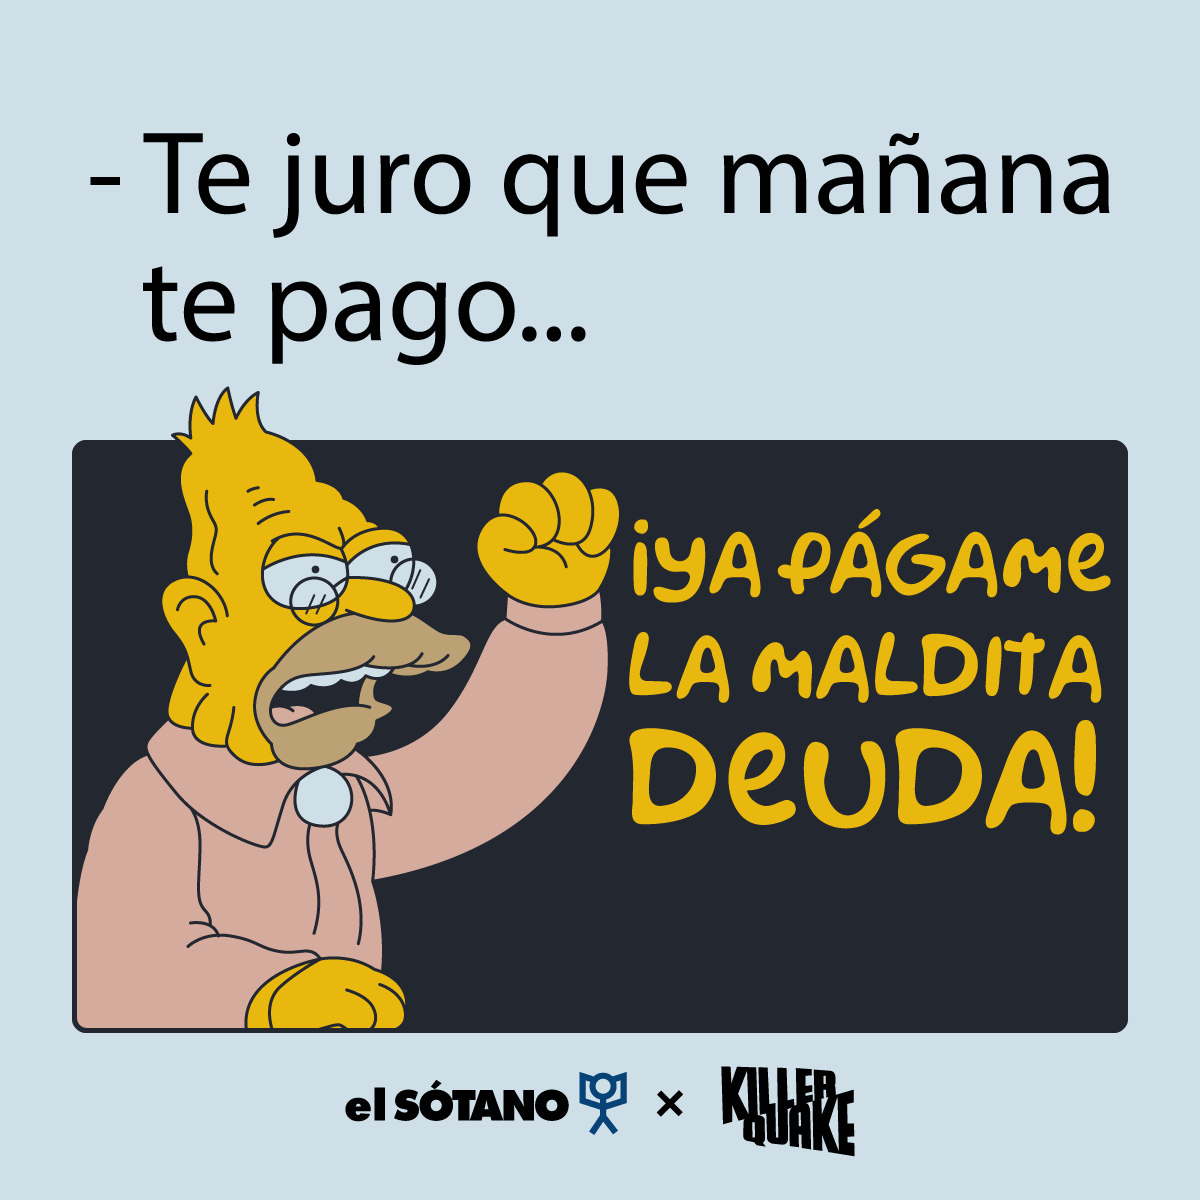 Pagar una deuda es como comer una naranja 🍊

Visita nuestra tienda 👉 killerquake.com.mx

#Simpsons #meme #abuelo #deuda
#Mexico #CDMX #libreria #parodia
@libreriaselsotano @elsotanolibros